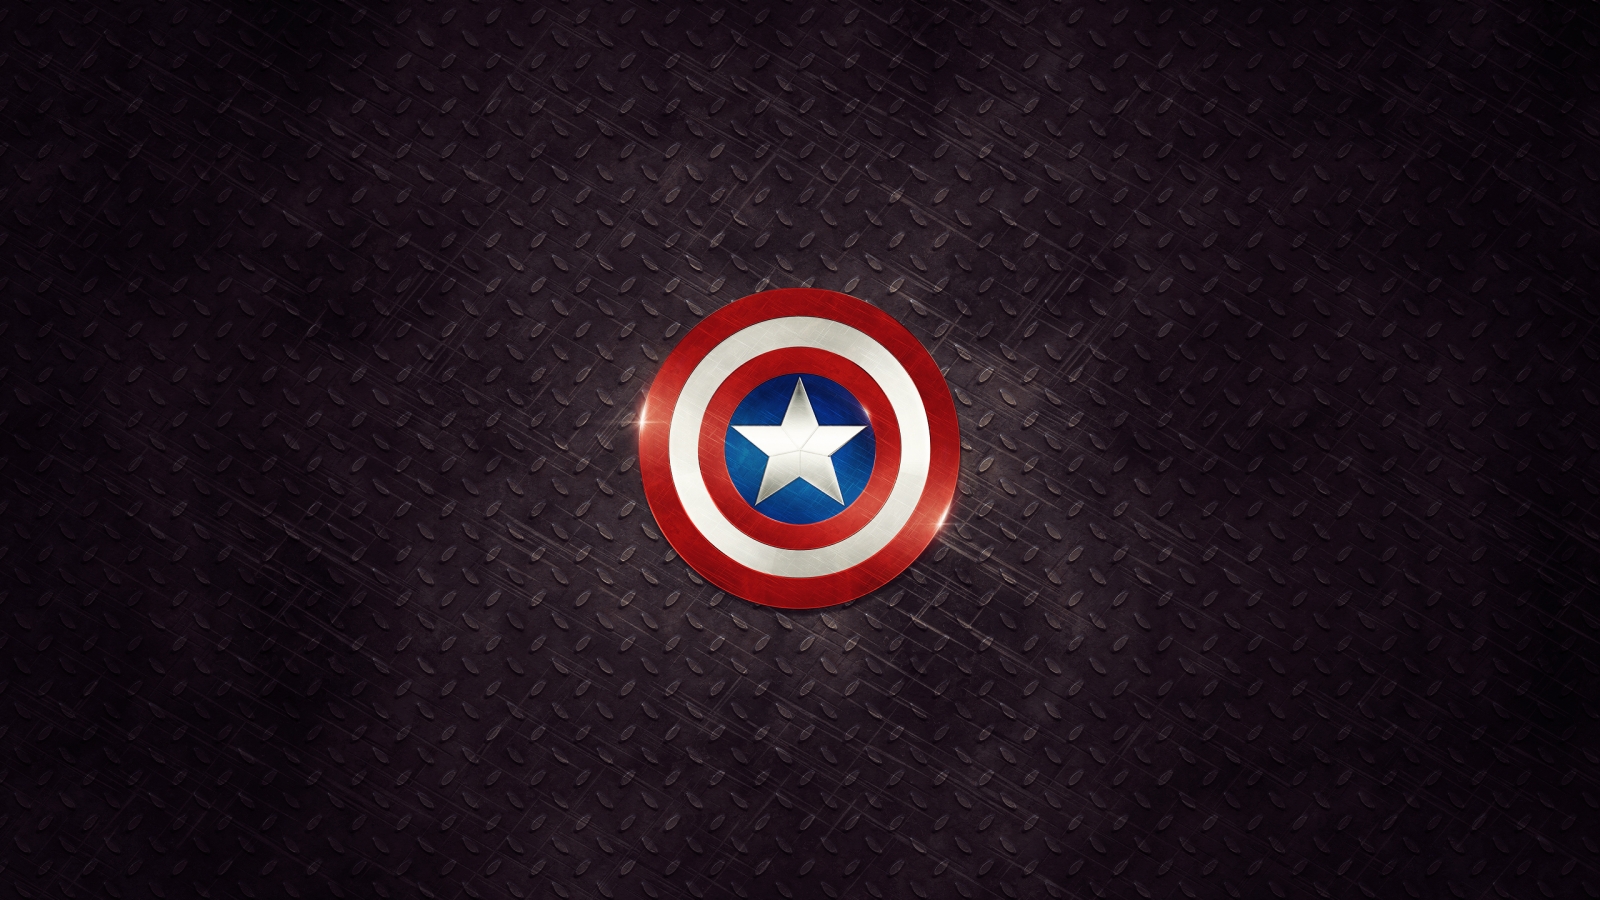 Captain America Logo for 1600 x 900 HDTV resolution